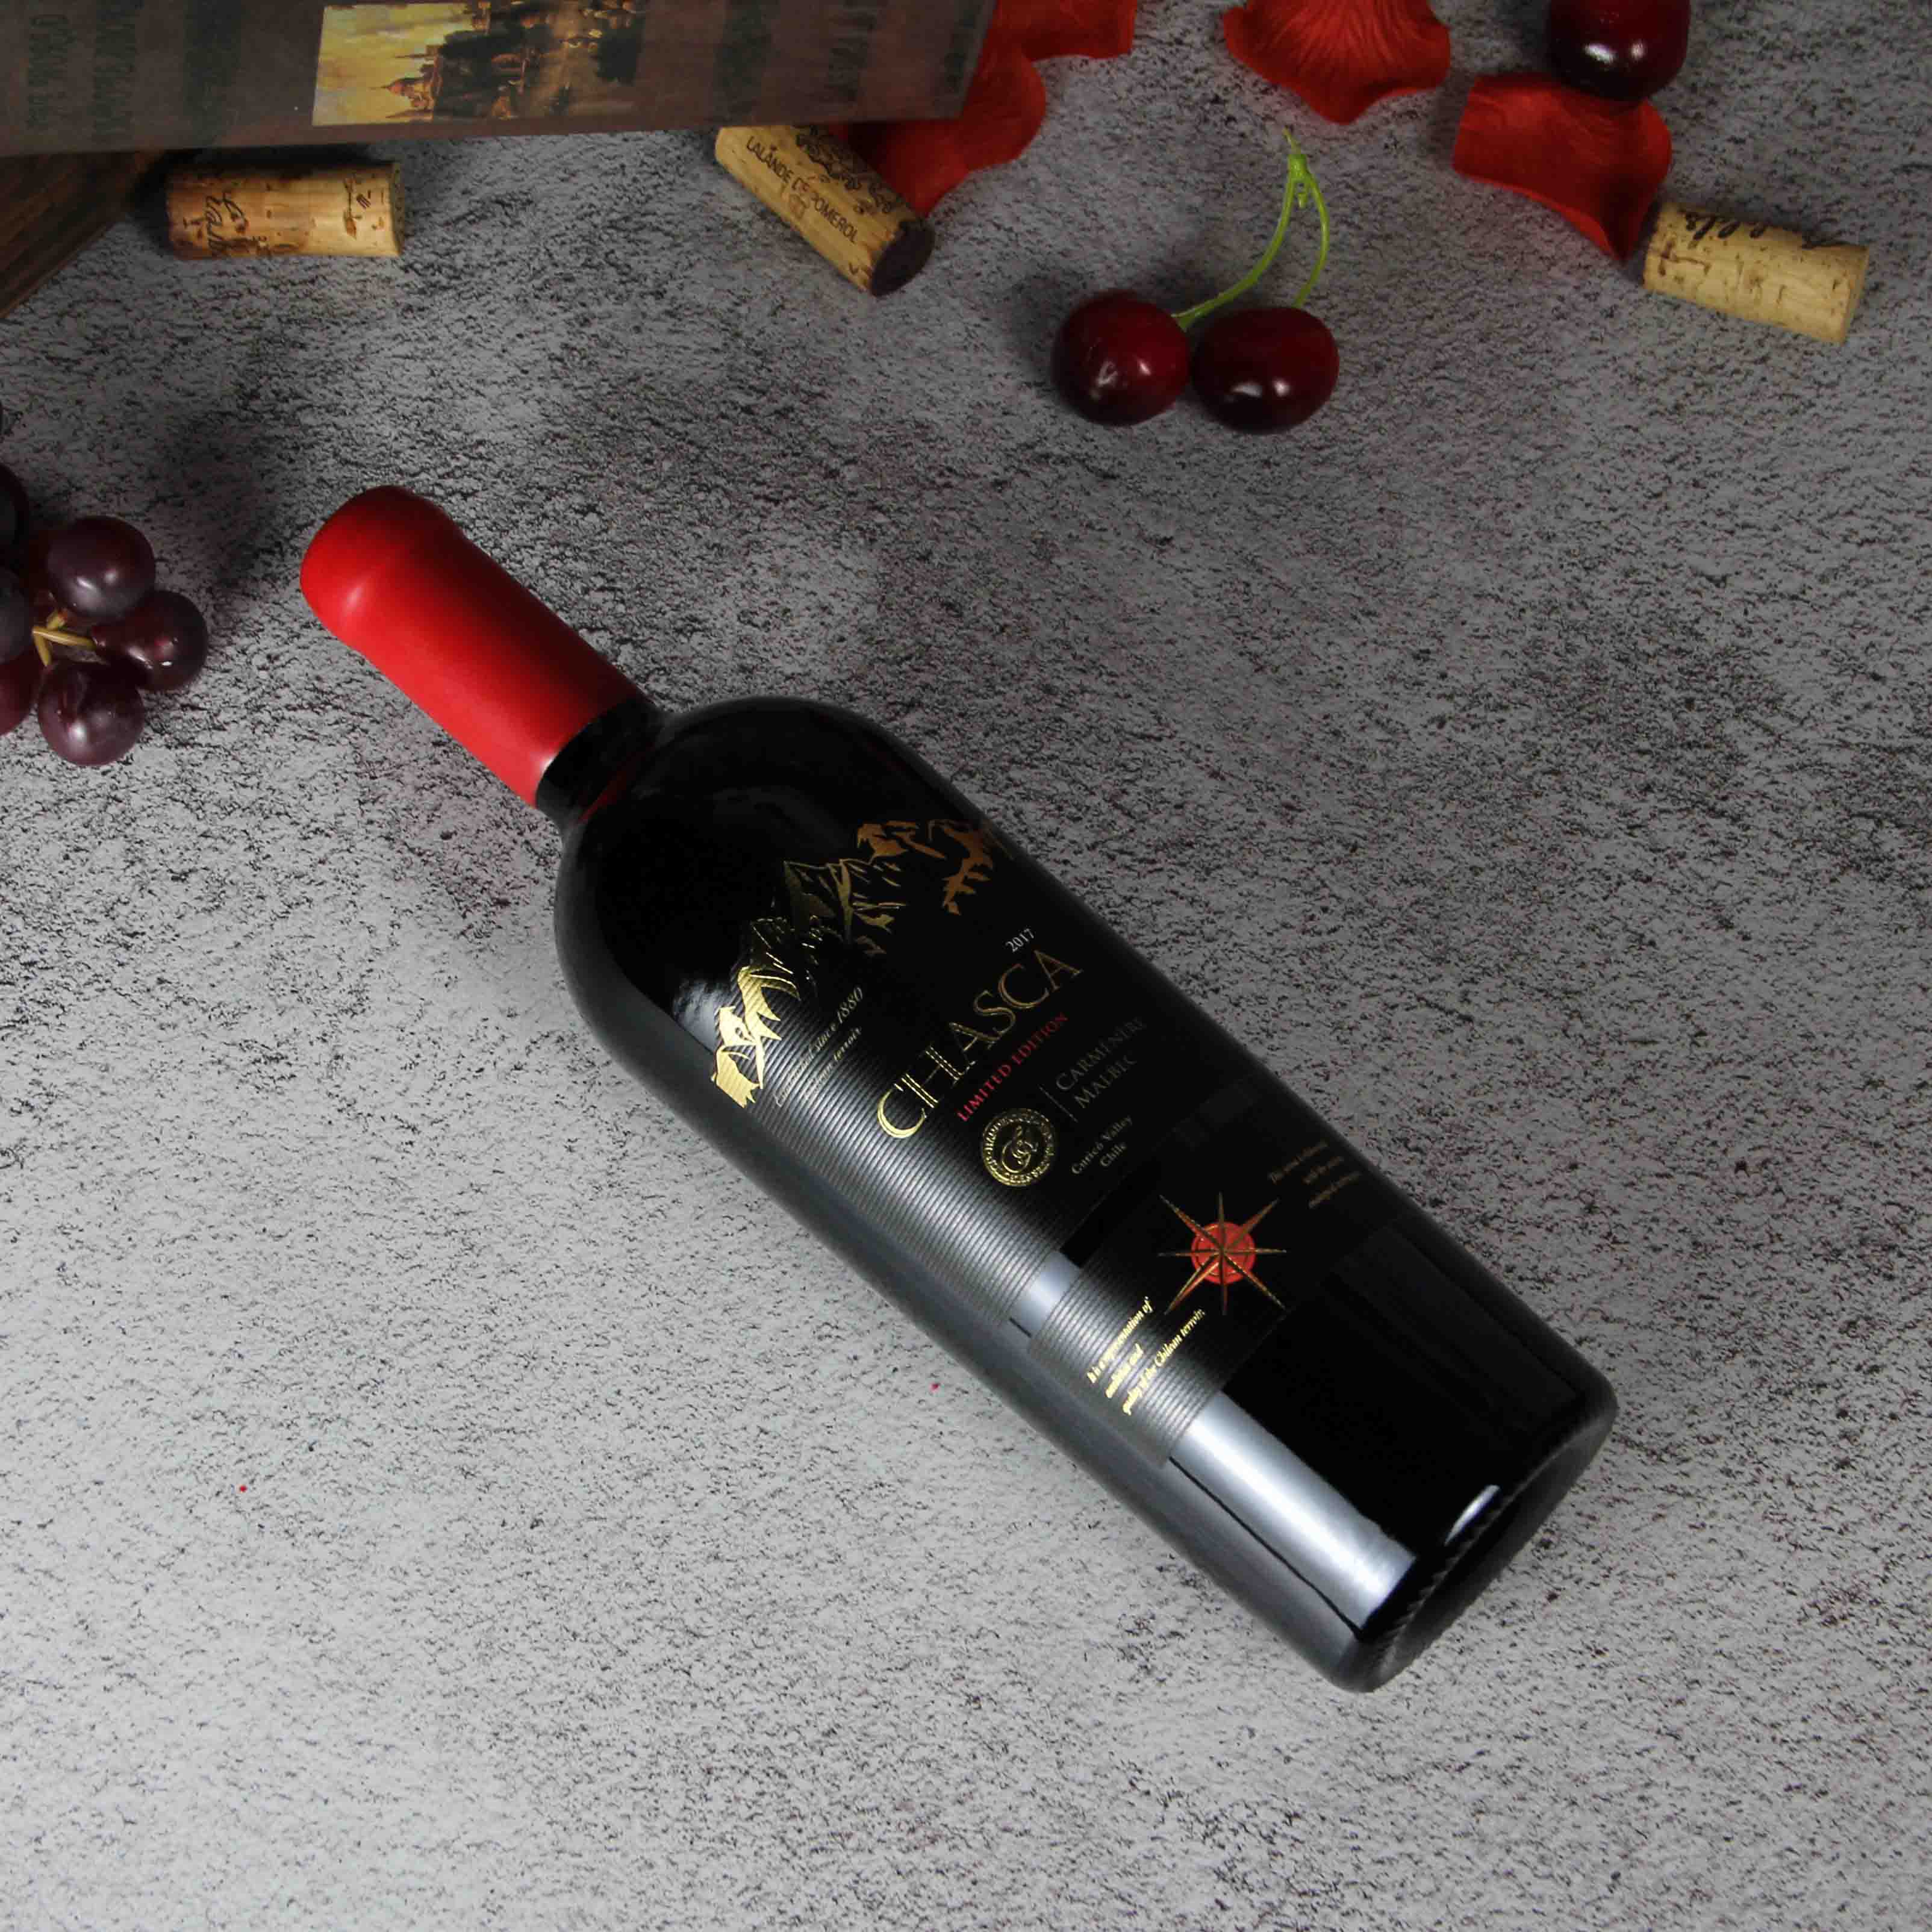 智利库里科谷智利之星佳美娜马尔贝克限量干红葡萄酒